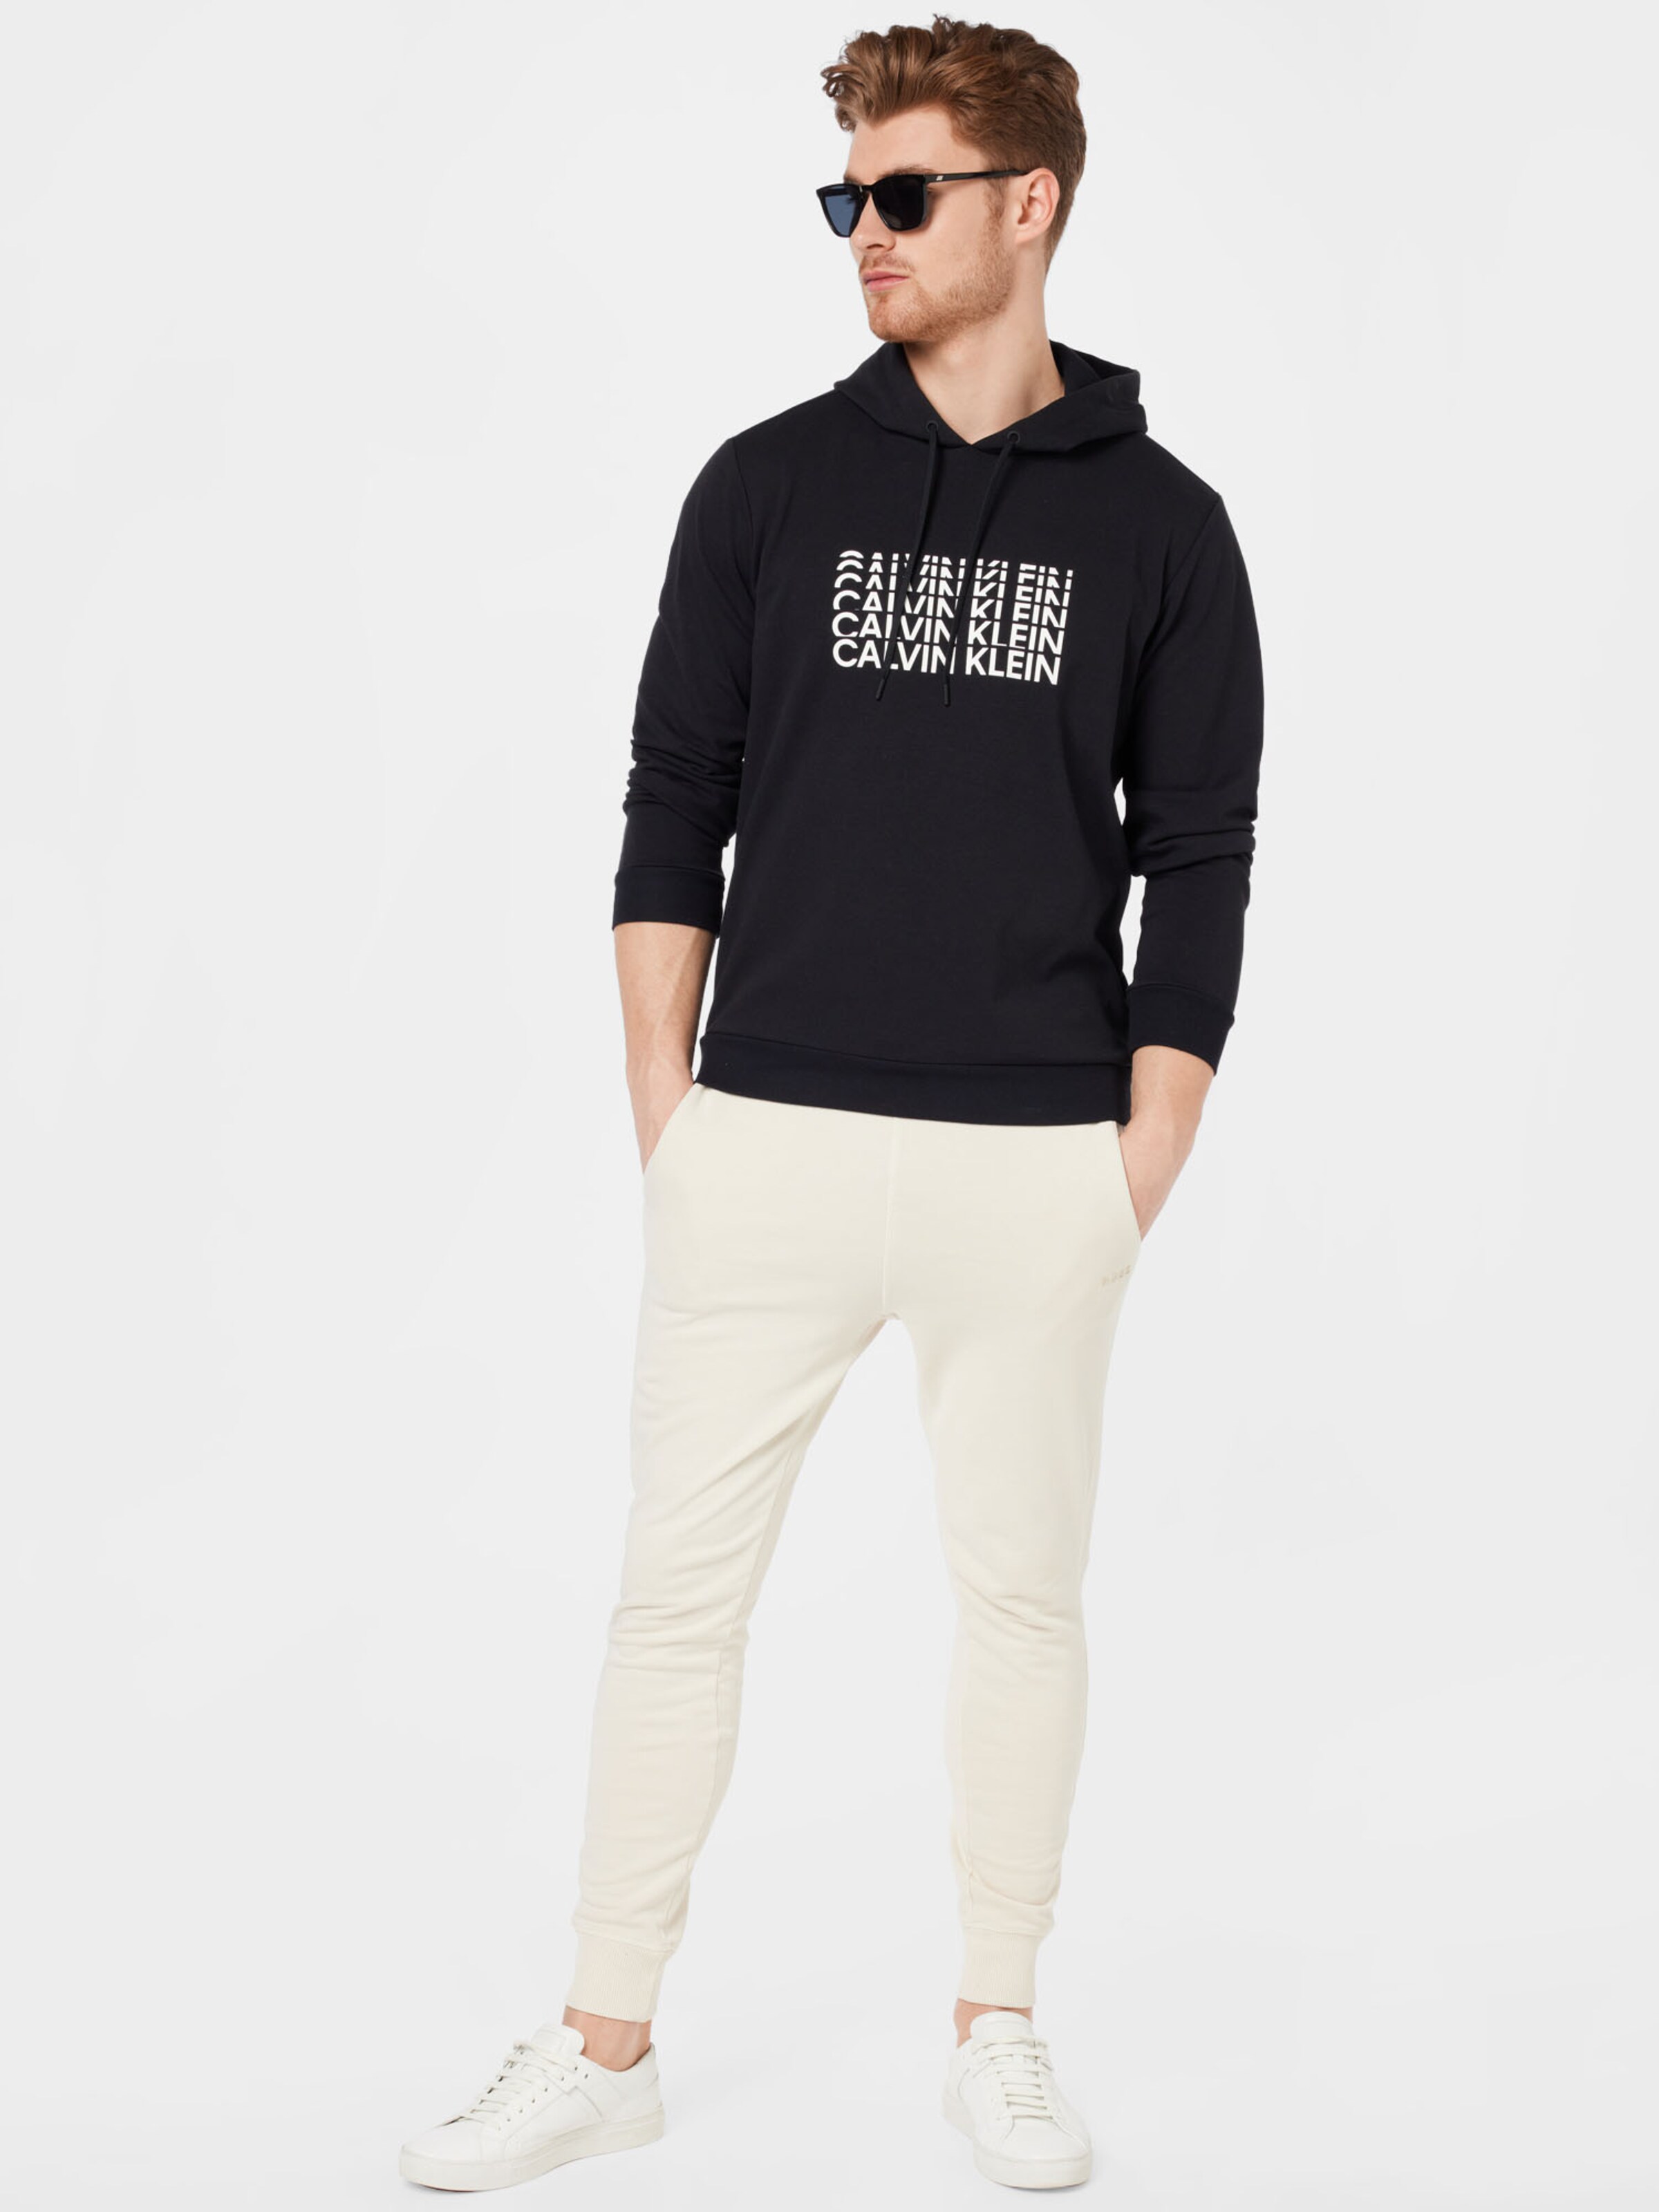 Männer Sportarten Calvin Klein Performance Sweatshirt in Schwarz - WS79043